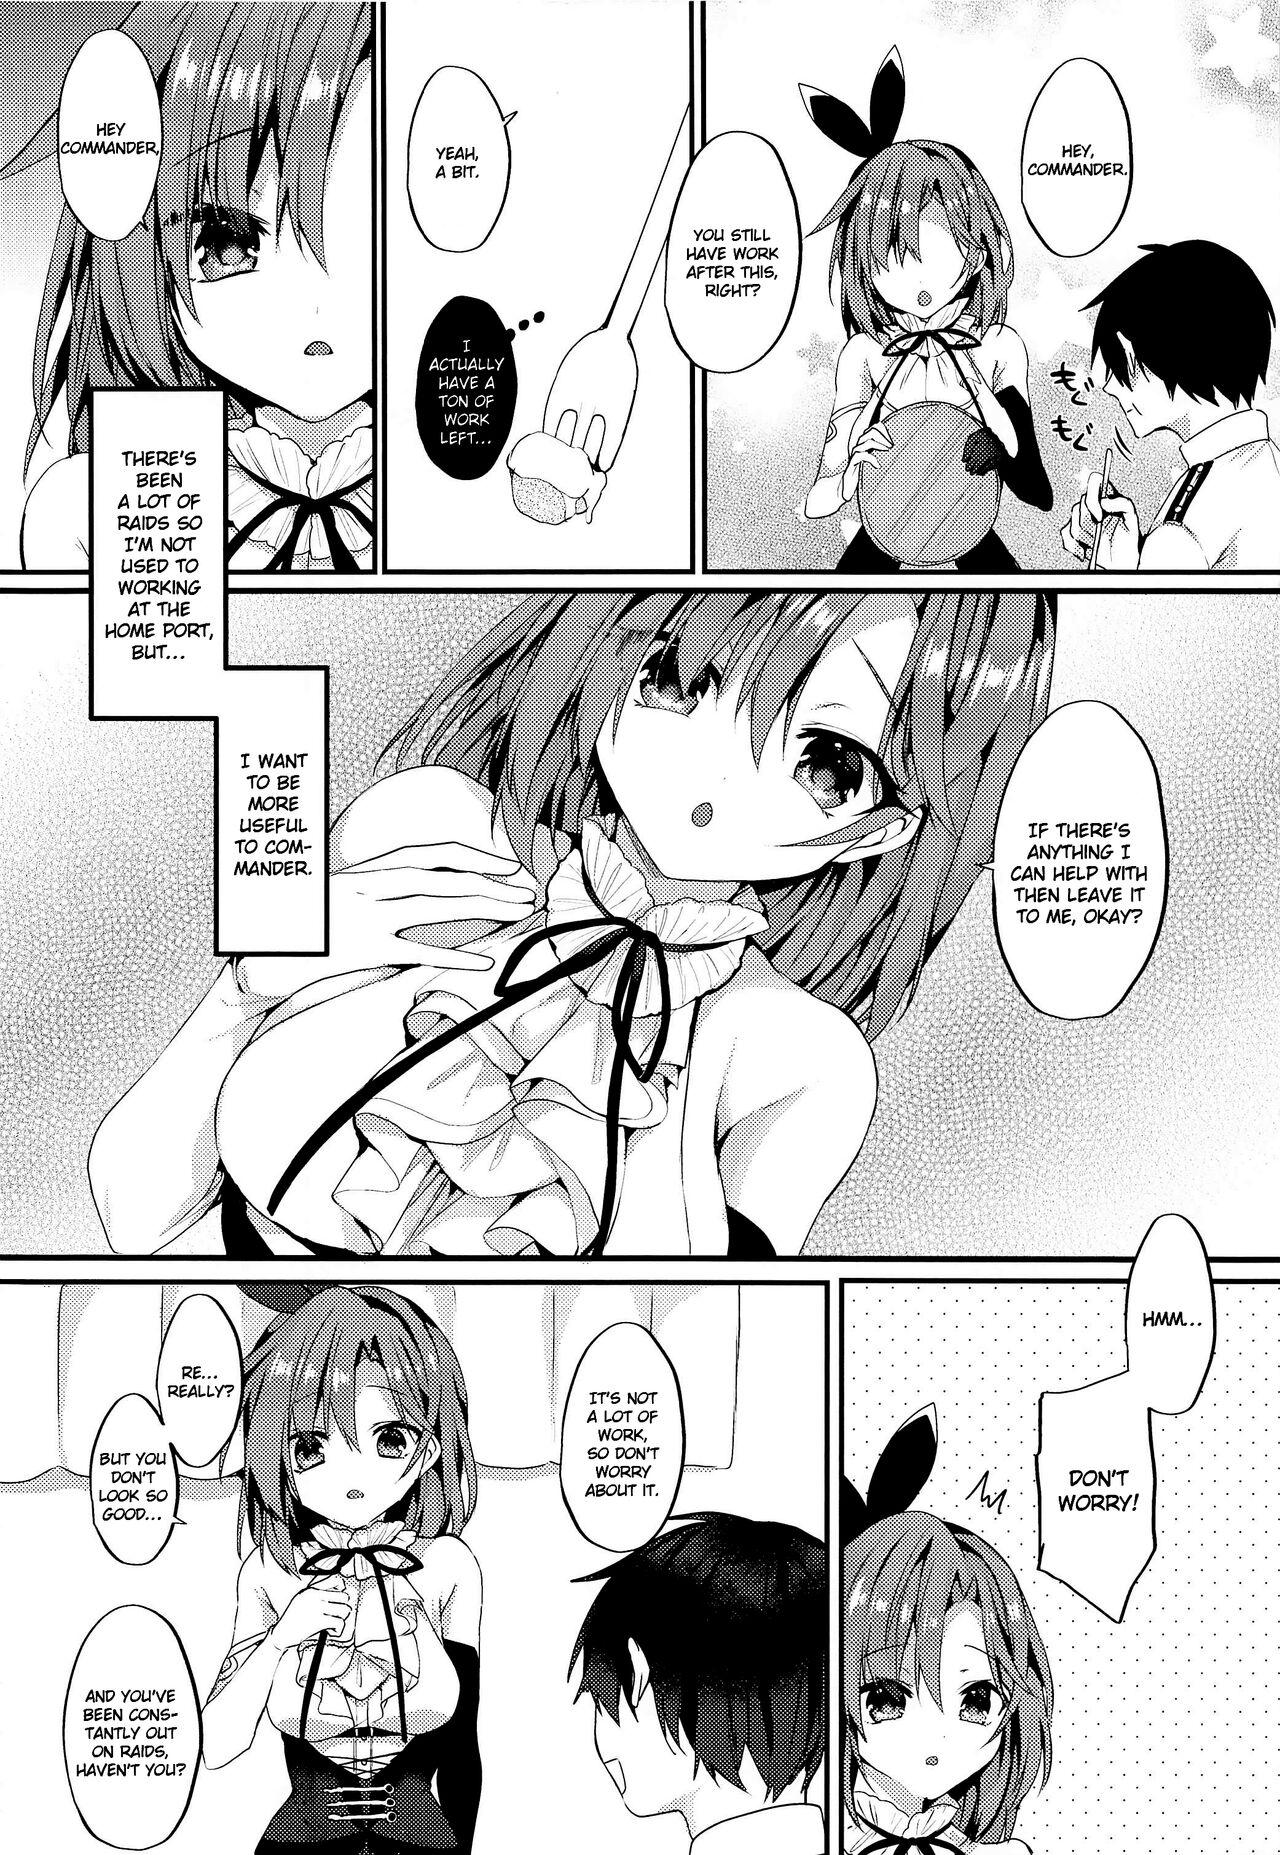 Small Tits Yasashiku Shitai no | I Want to Be Nicer to You - Azur lane Flagra - Page 4